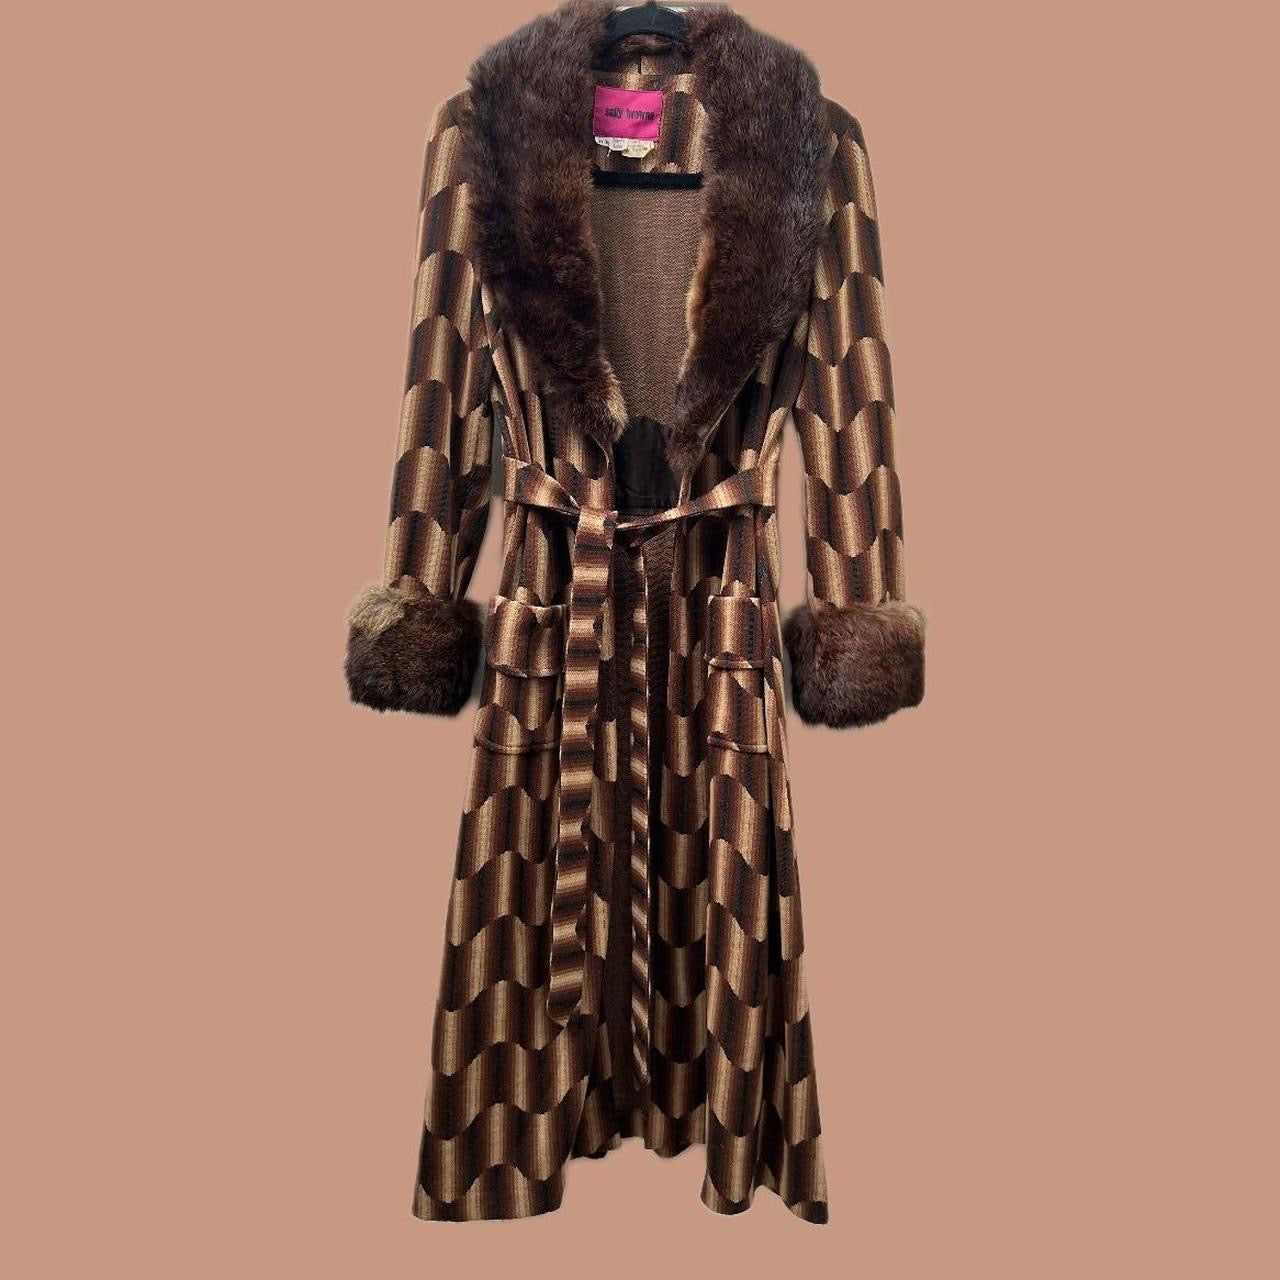 Vintage Sally Browne coat